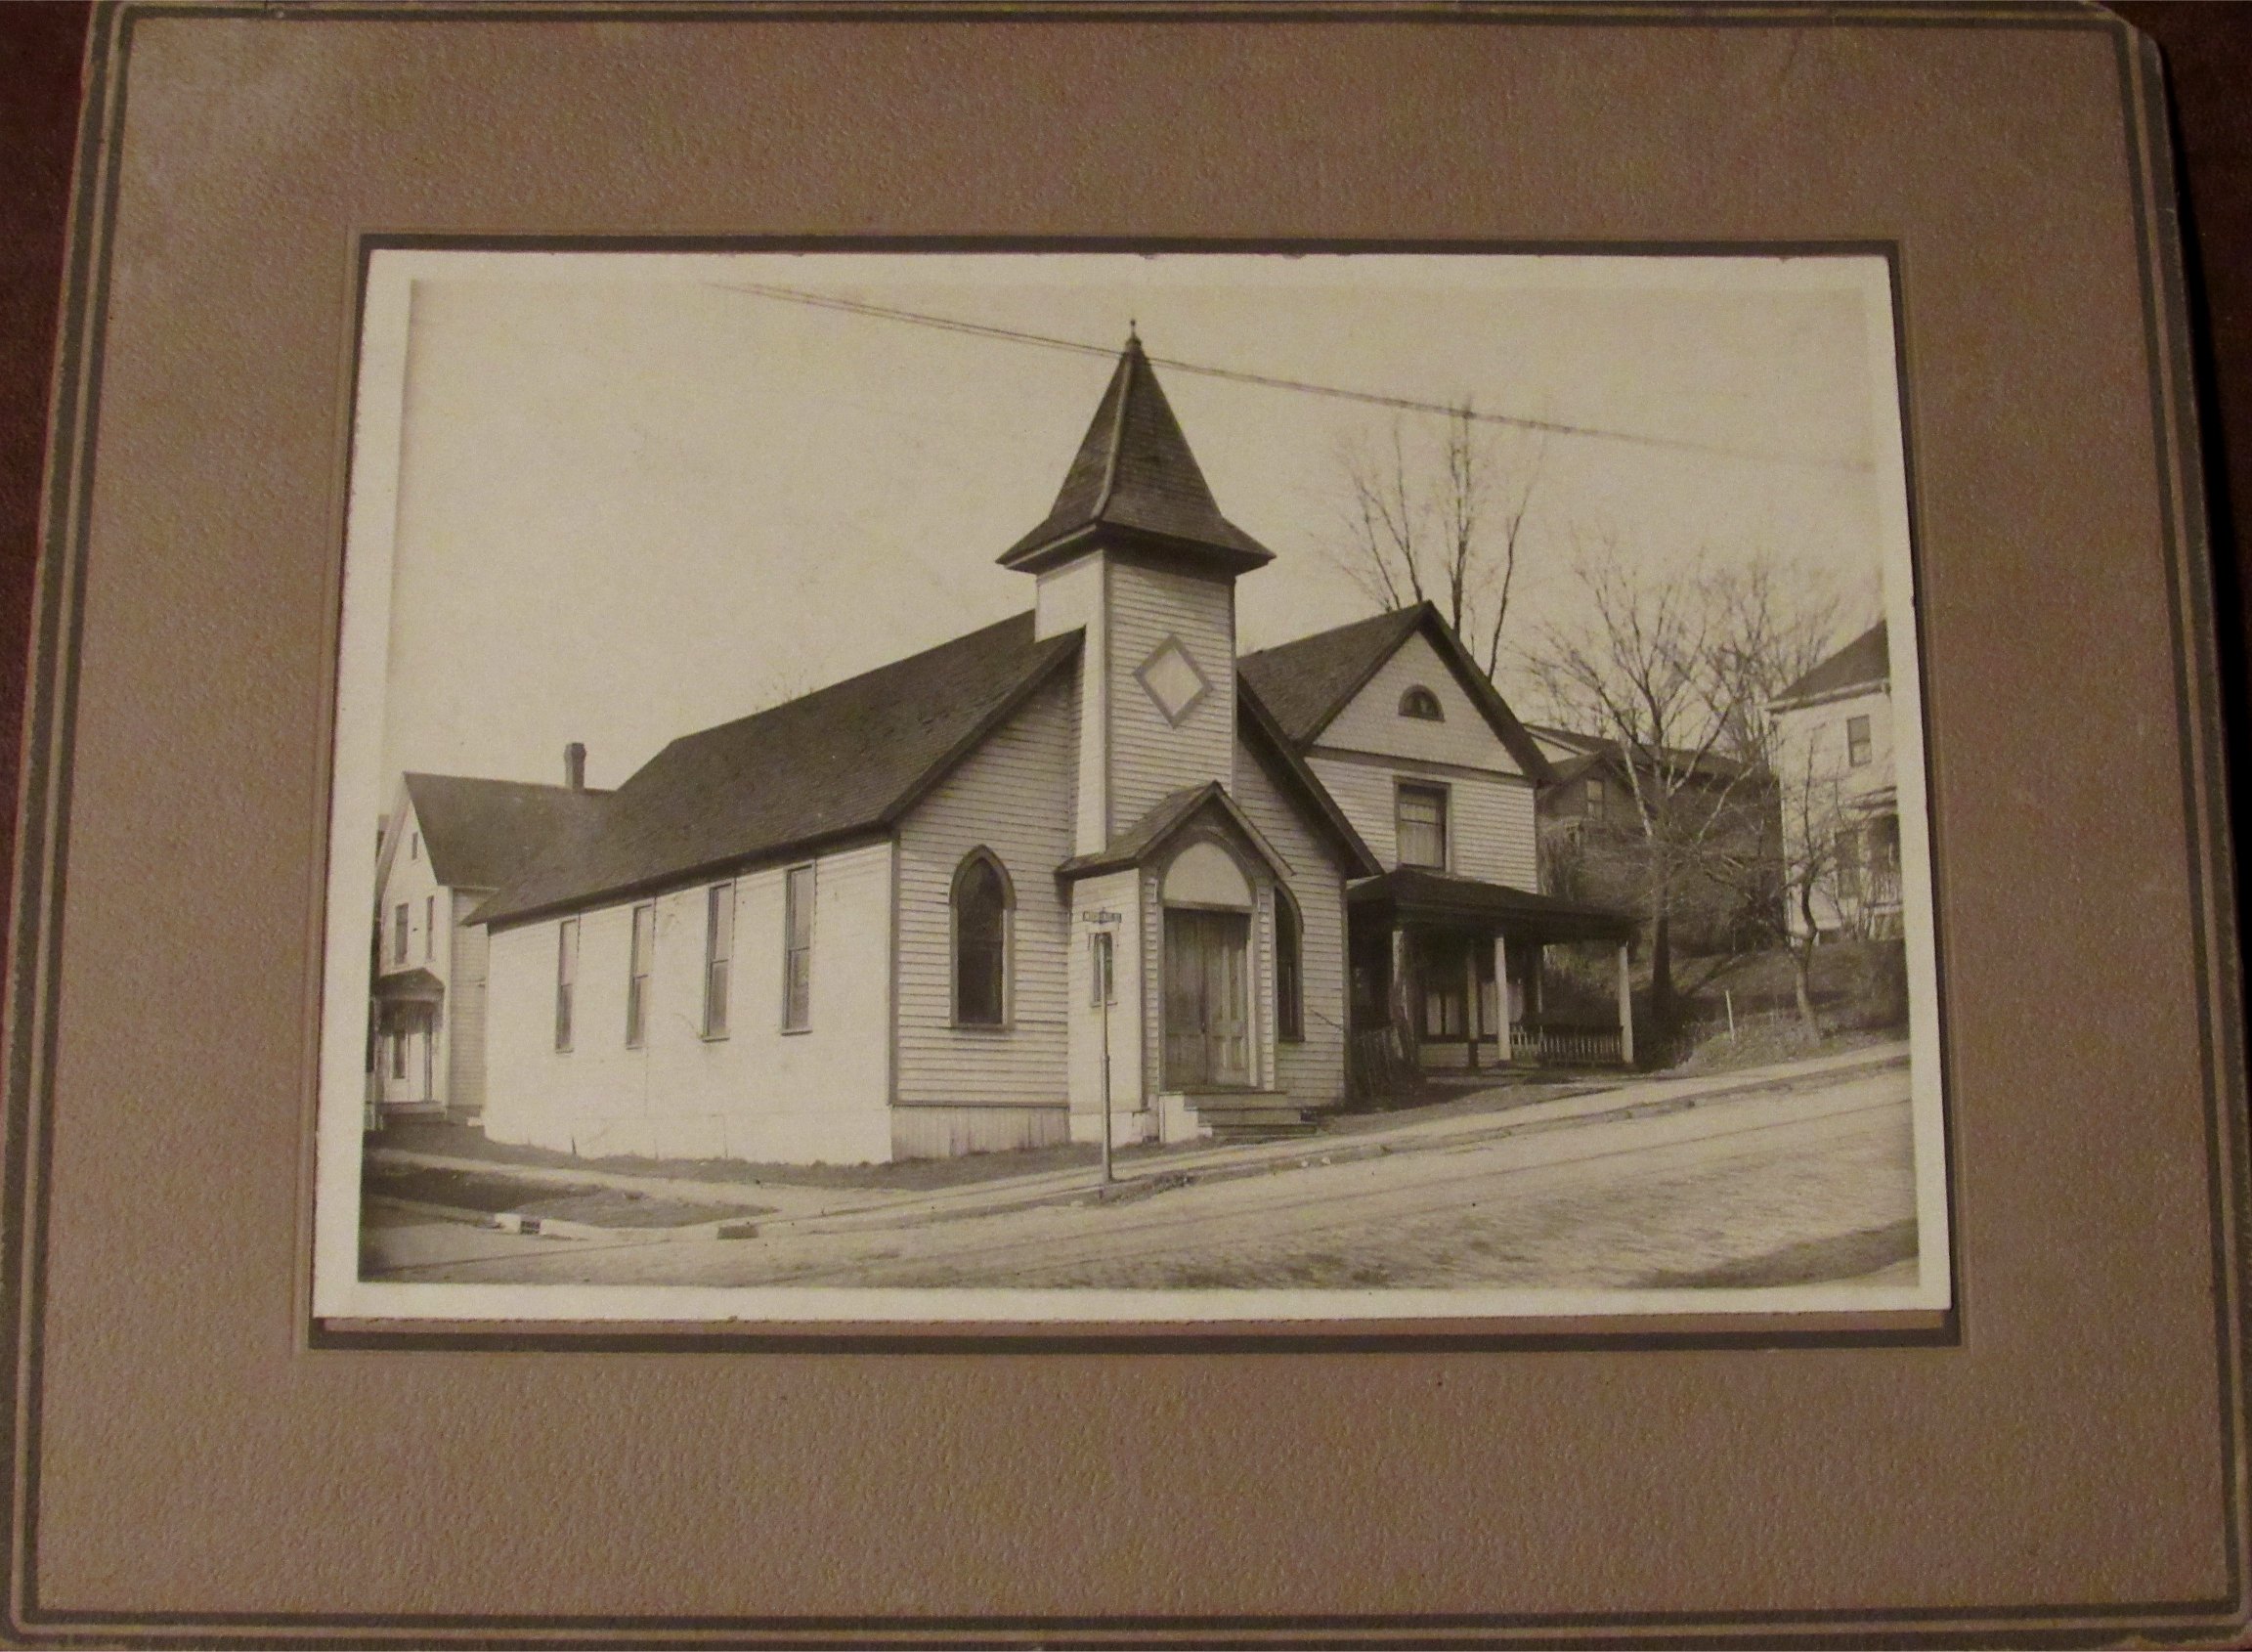 AME Church circa 1910